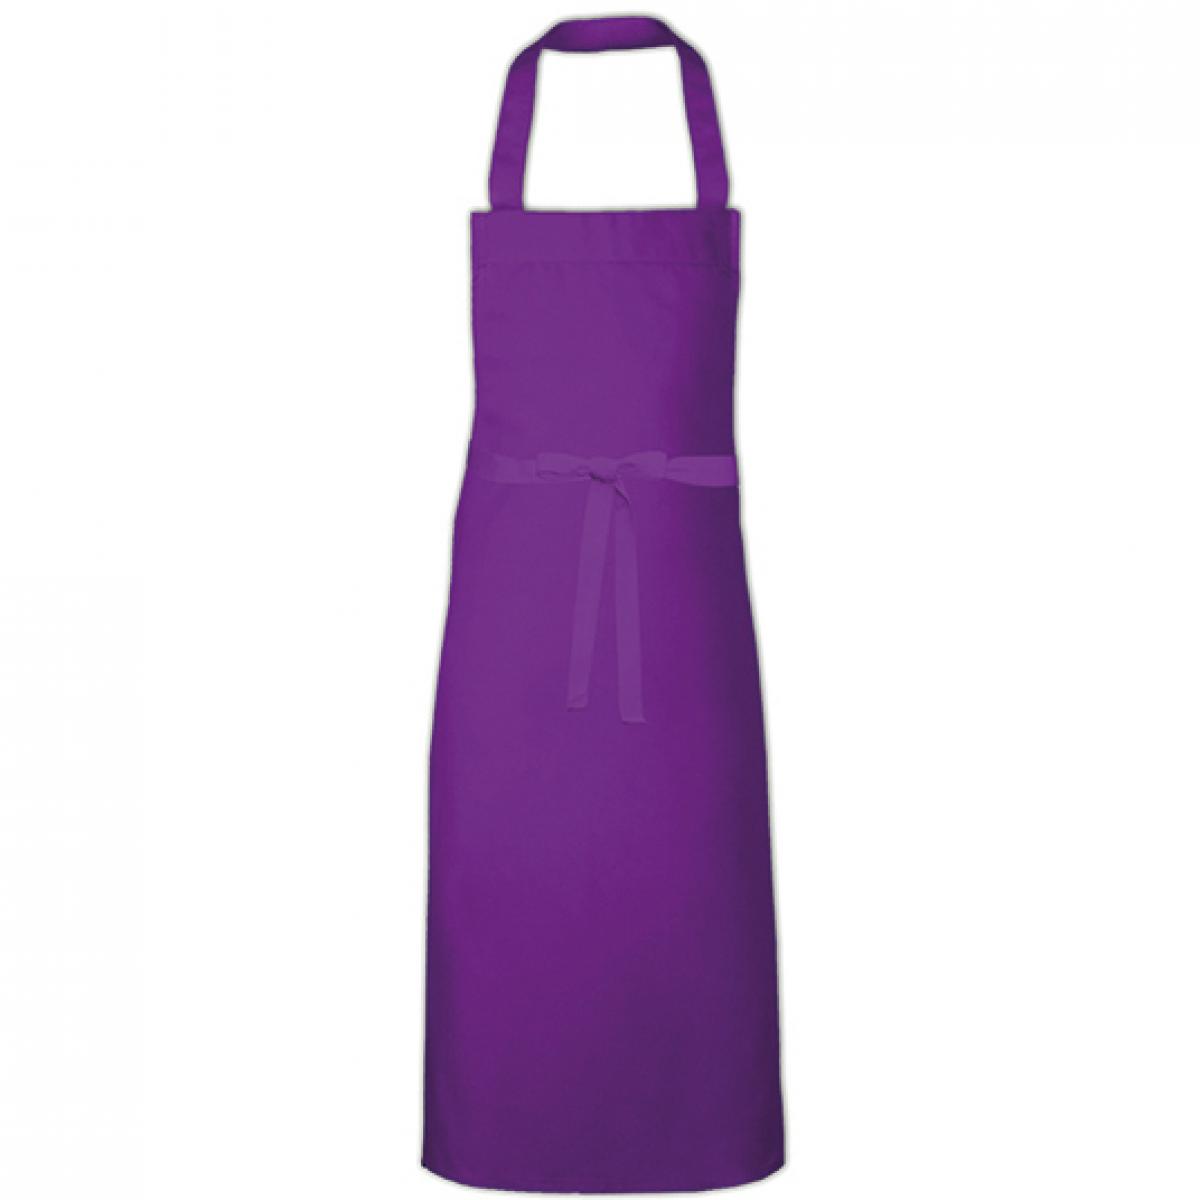 Hersteller: Link Kitchen Wear Herstellernummer: BBQ11073 Artikelbezeichnung: Barbecue Apron XL - 73 x 110 cm - Waschbar bis 60 °C Farbe: Purple